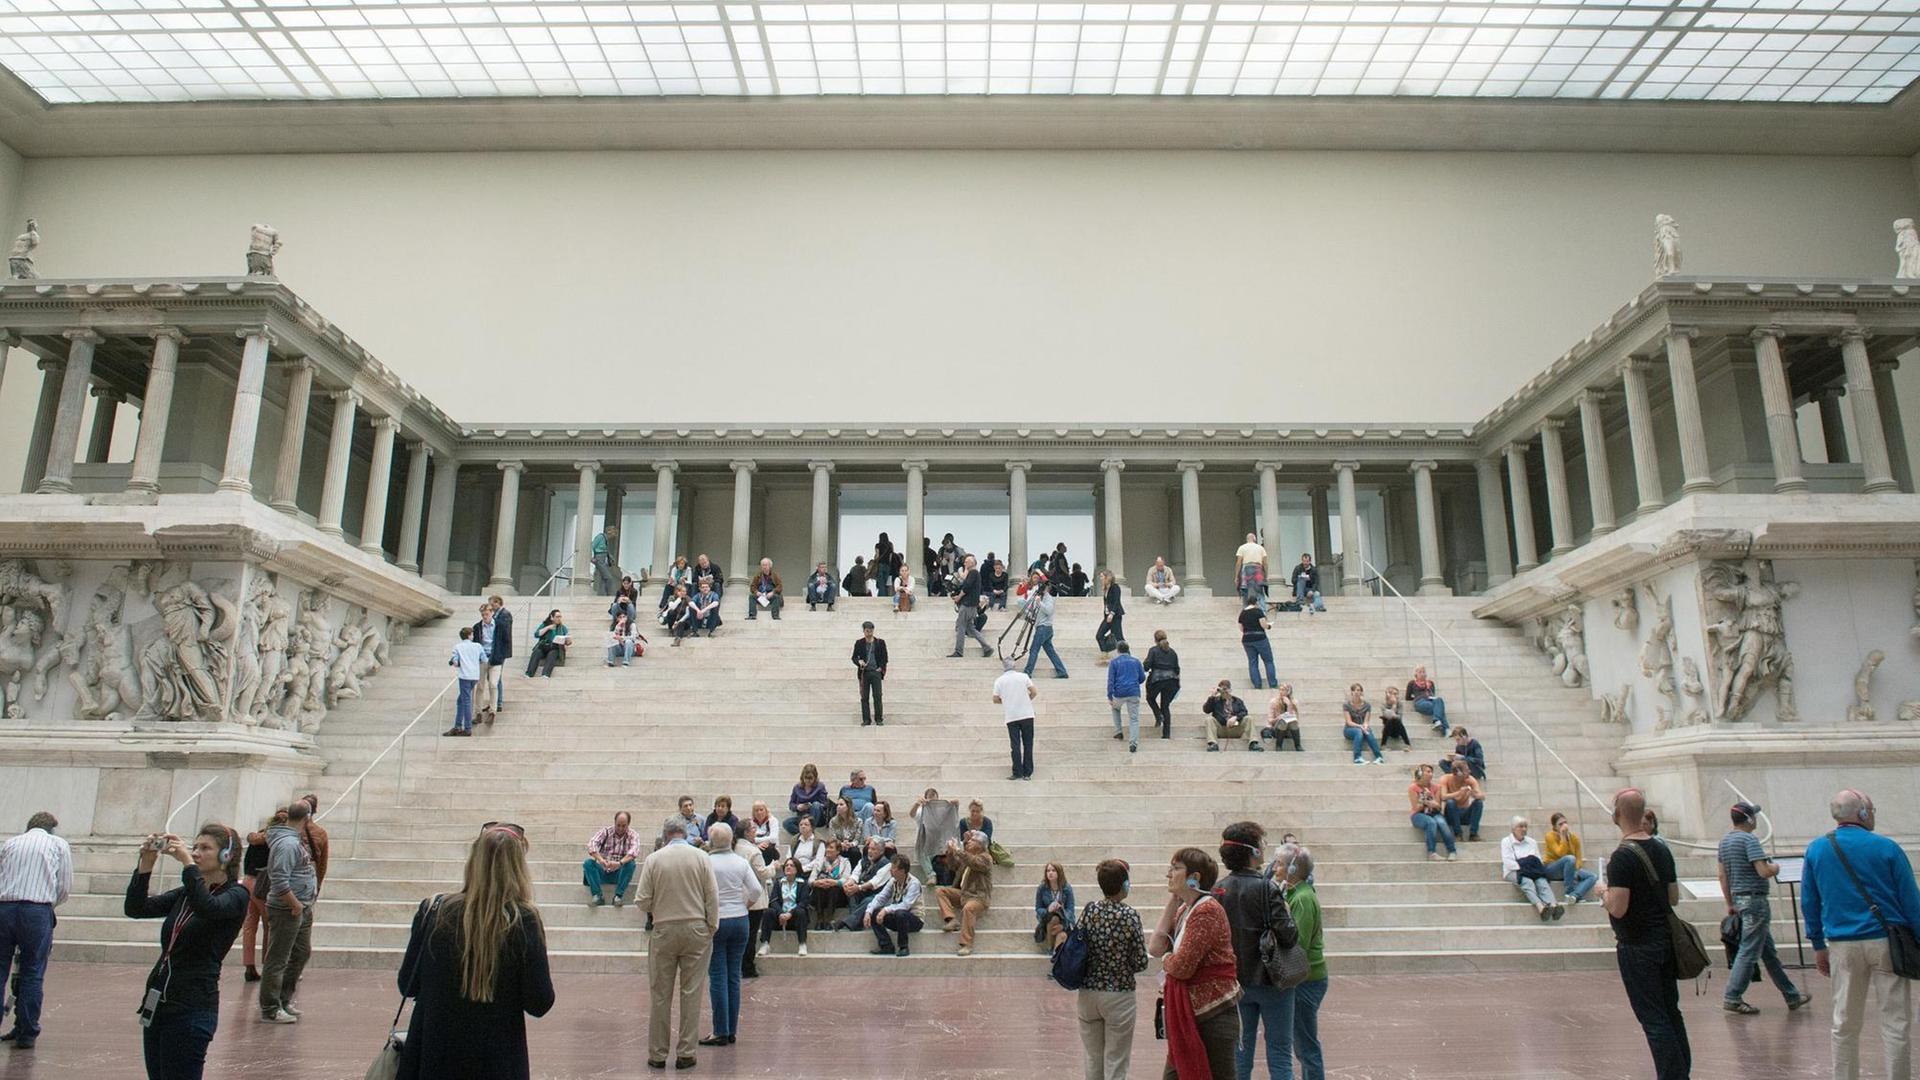 Ansicht des Pergamonaltars im Pergamonmuseum in Berlin. Auf den Stufen sitzen und stehen Museumsbesucher.